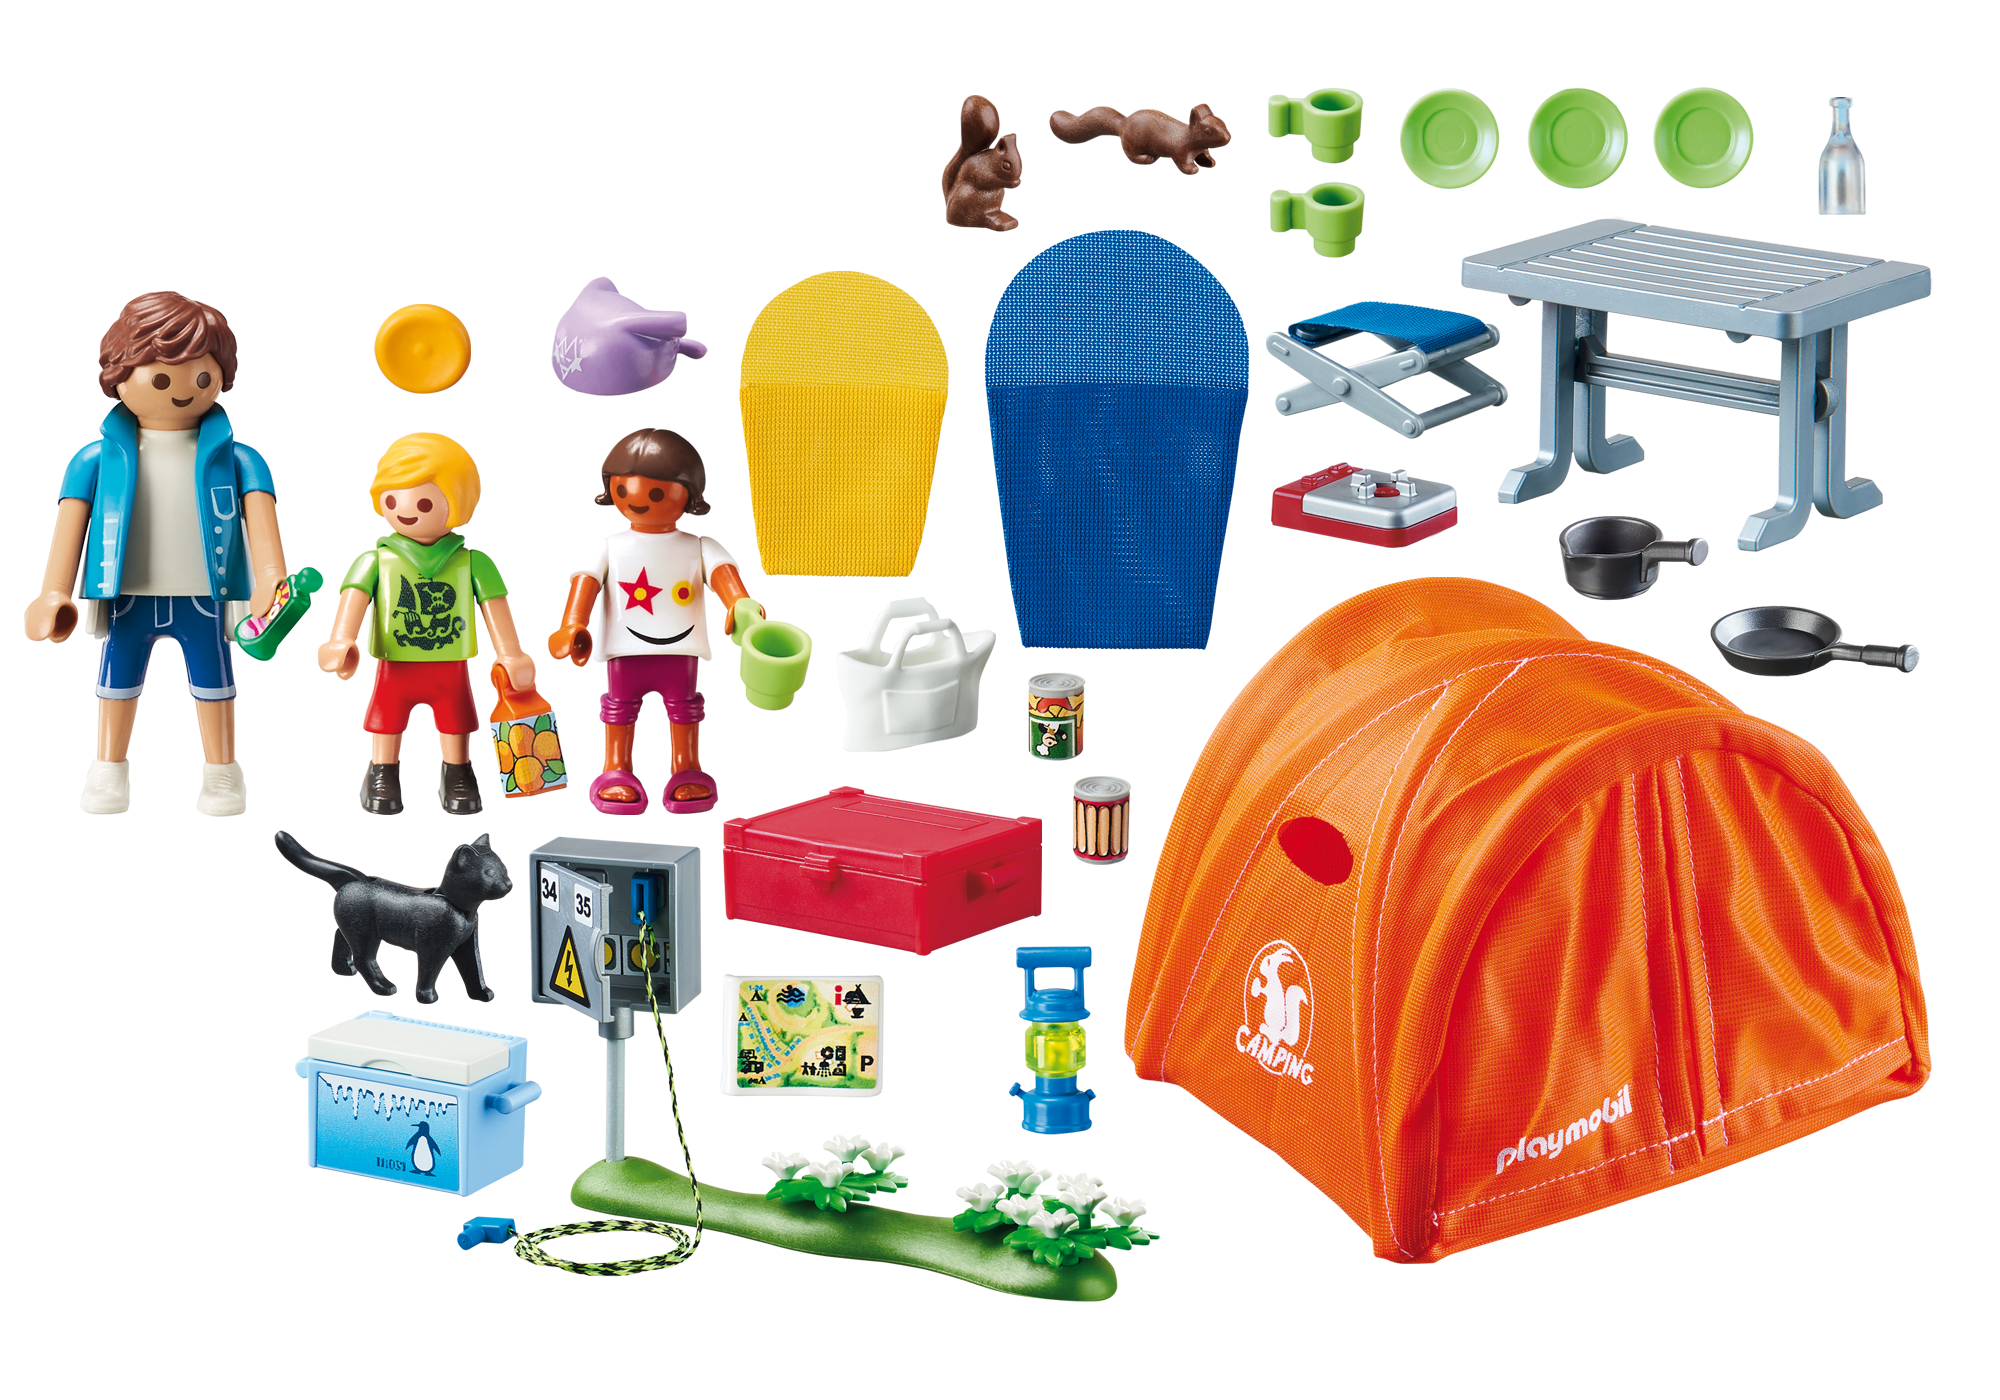 playmobil camping set